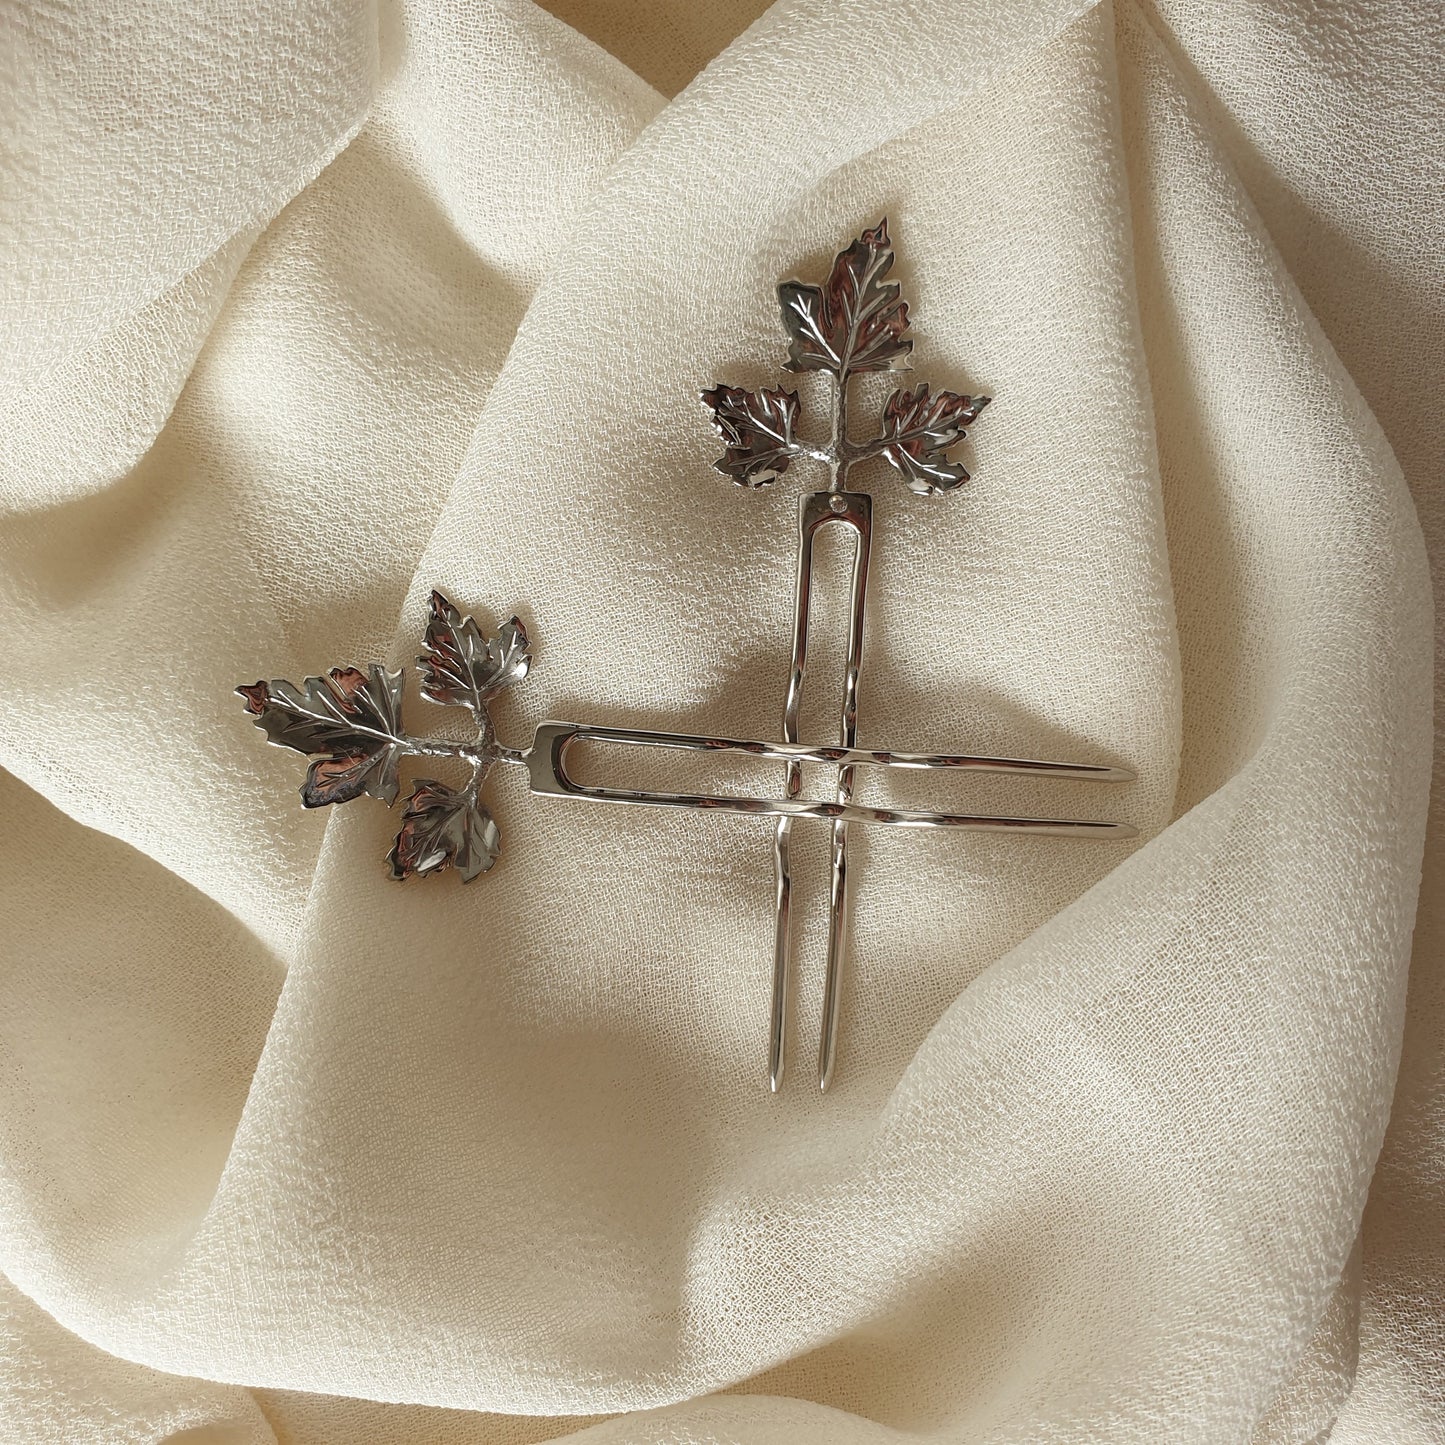 Horquillas de plata de ley Persil sobre la tela de un vestido de fiesta.